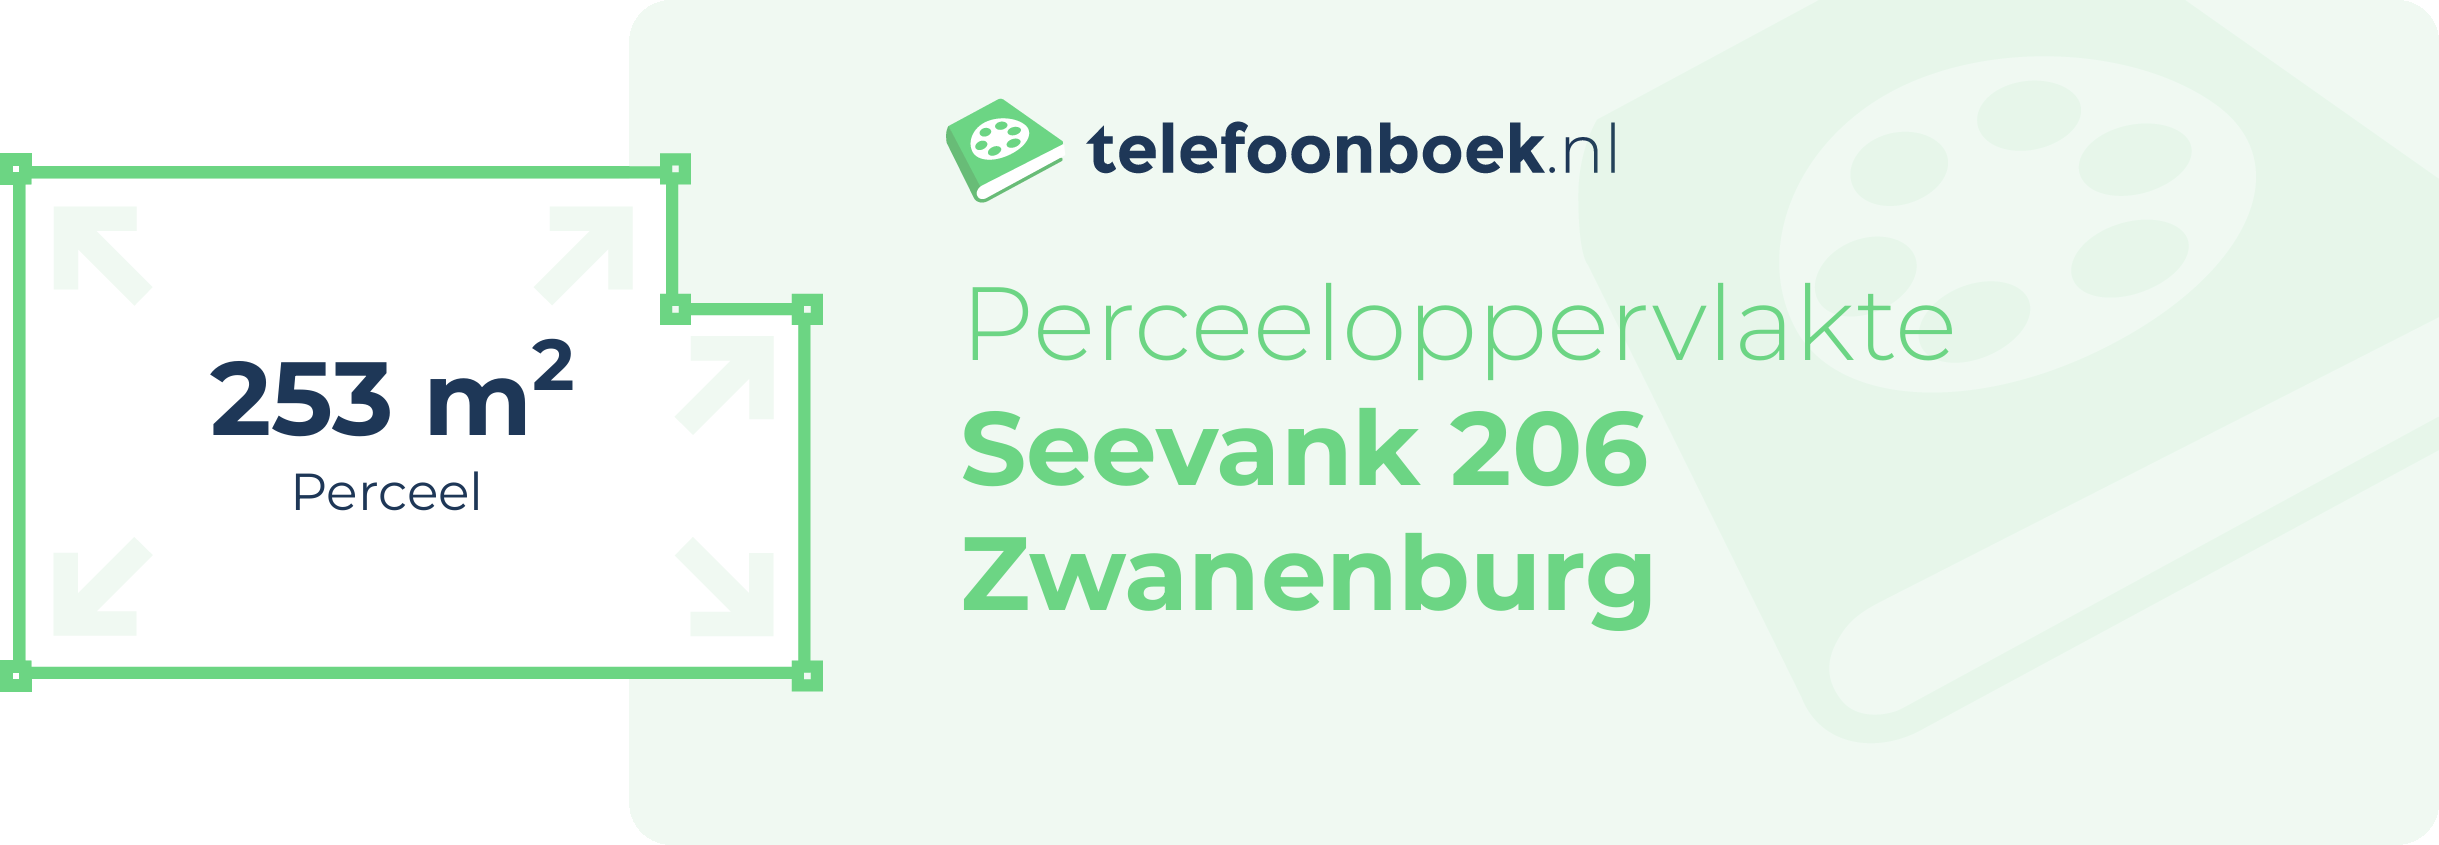 Perceeloppervlakte Seevank 206 Zwanenburg